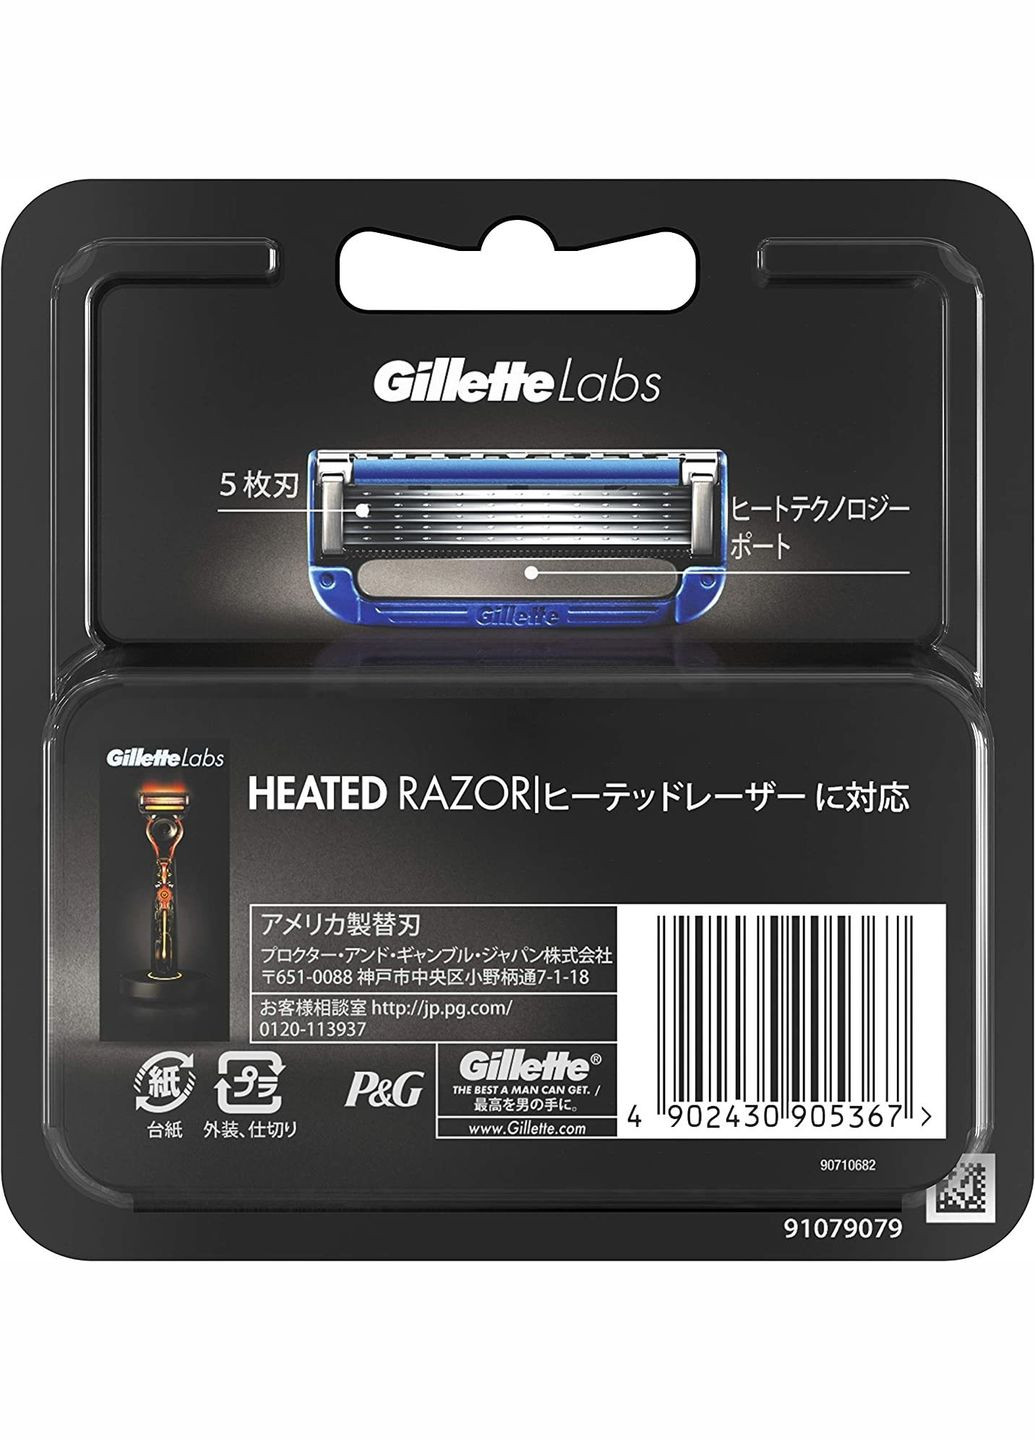 Сменные кассеты для бритвенного станка с подогревом Labs Heated Razor 4 шт Gillette (280927320)